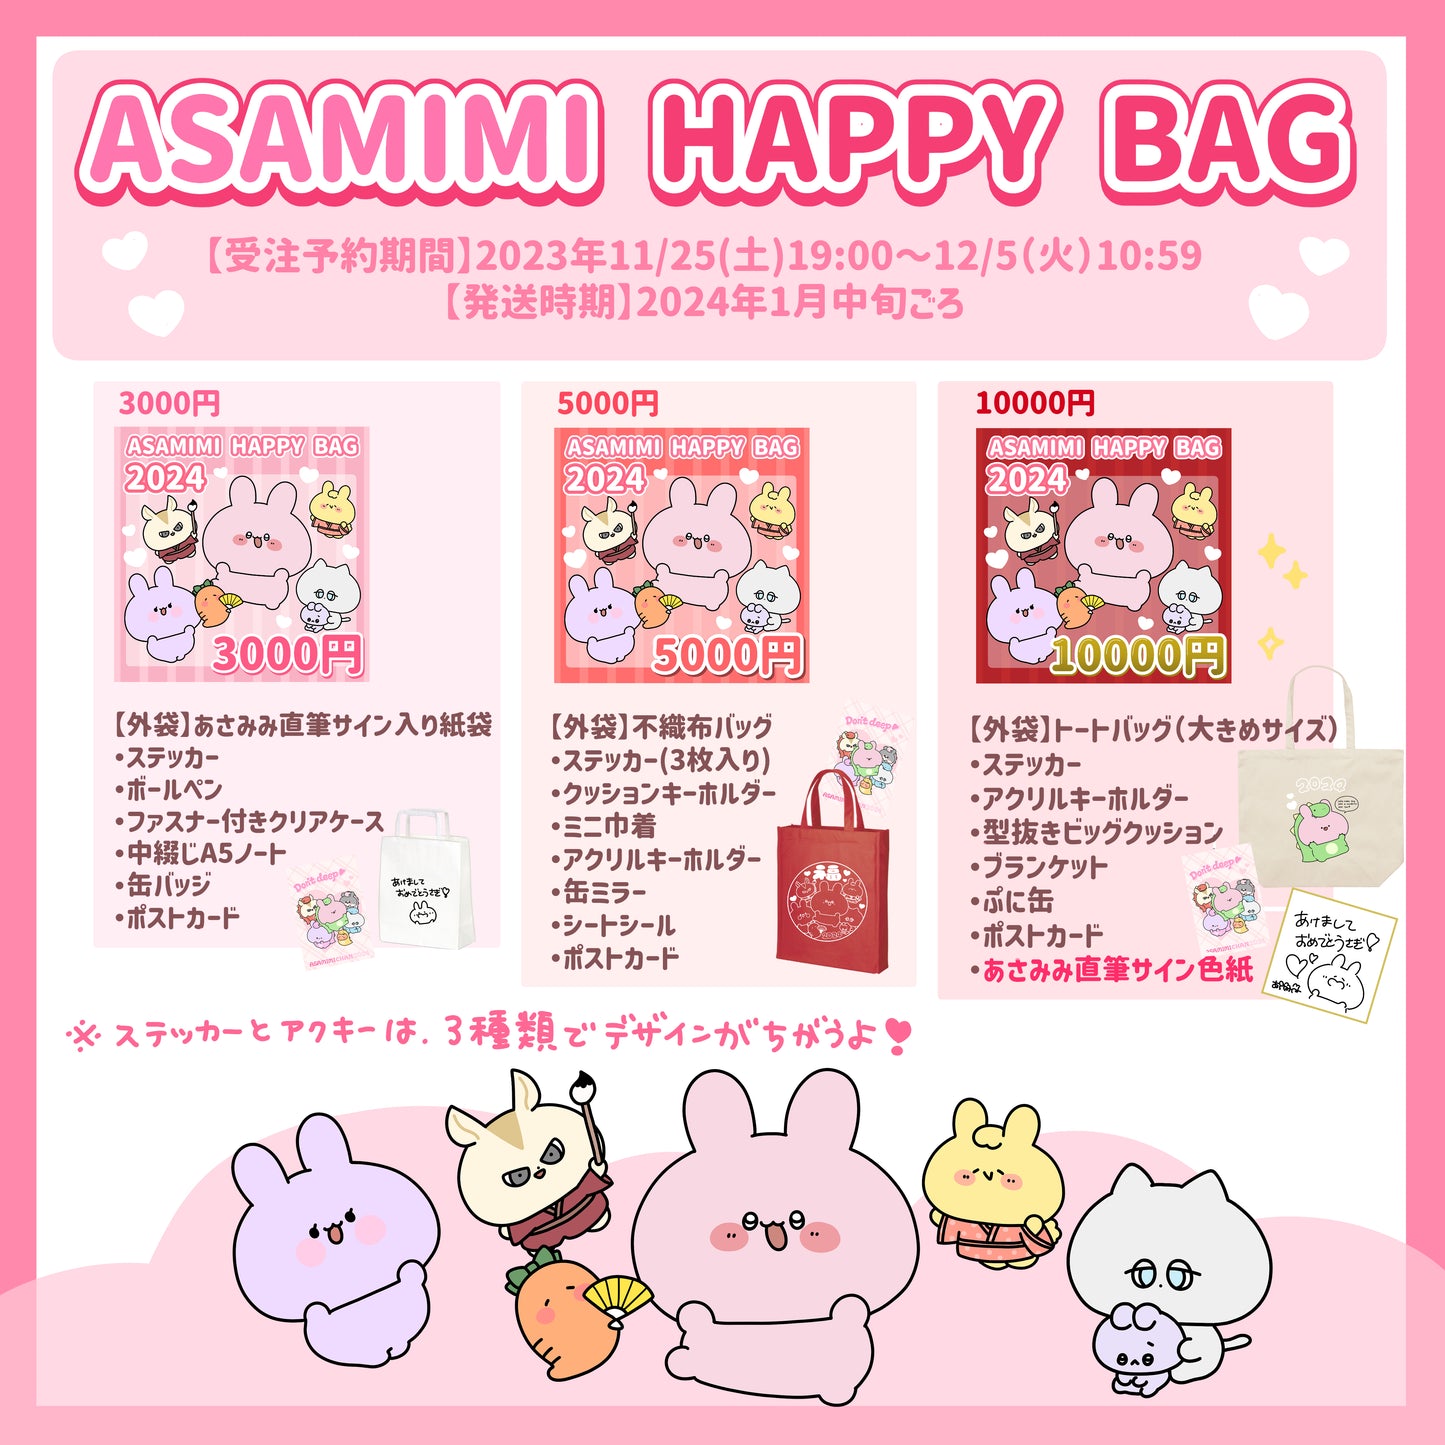 [Asamimi-chan] ASAMIMI HAPPY BAG 2024 (¥10,000) [Shipped in mid-January]